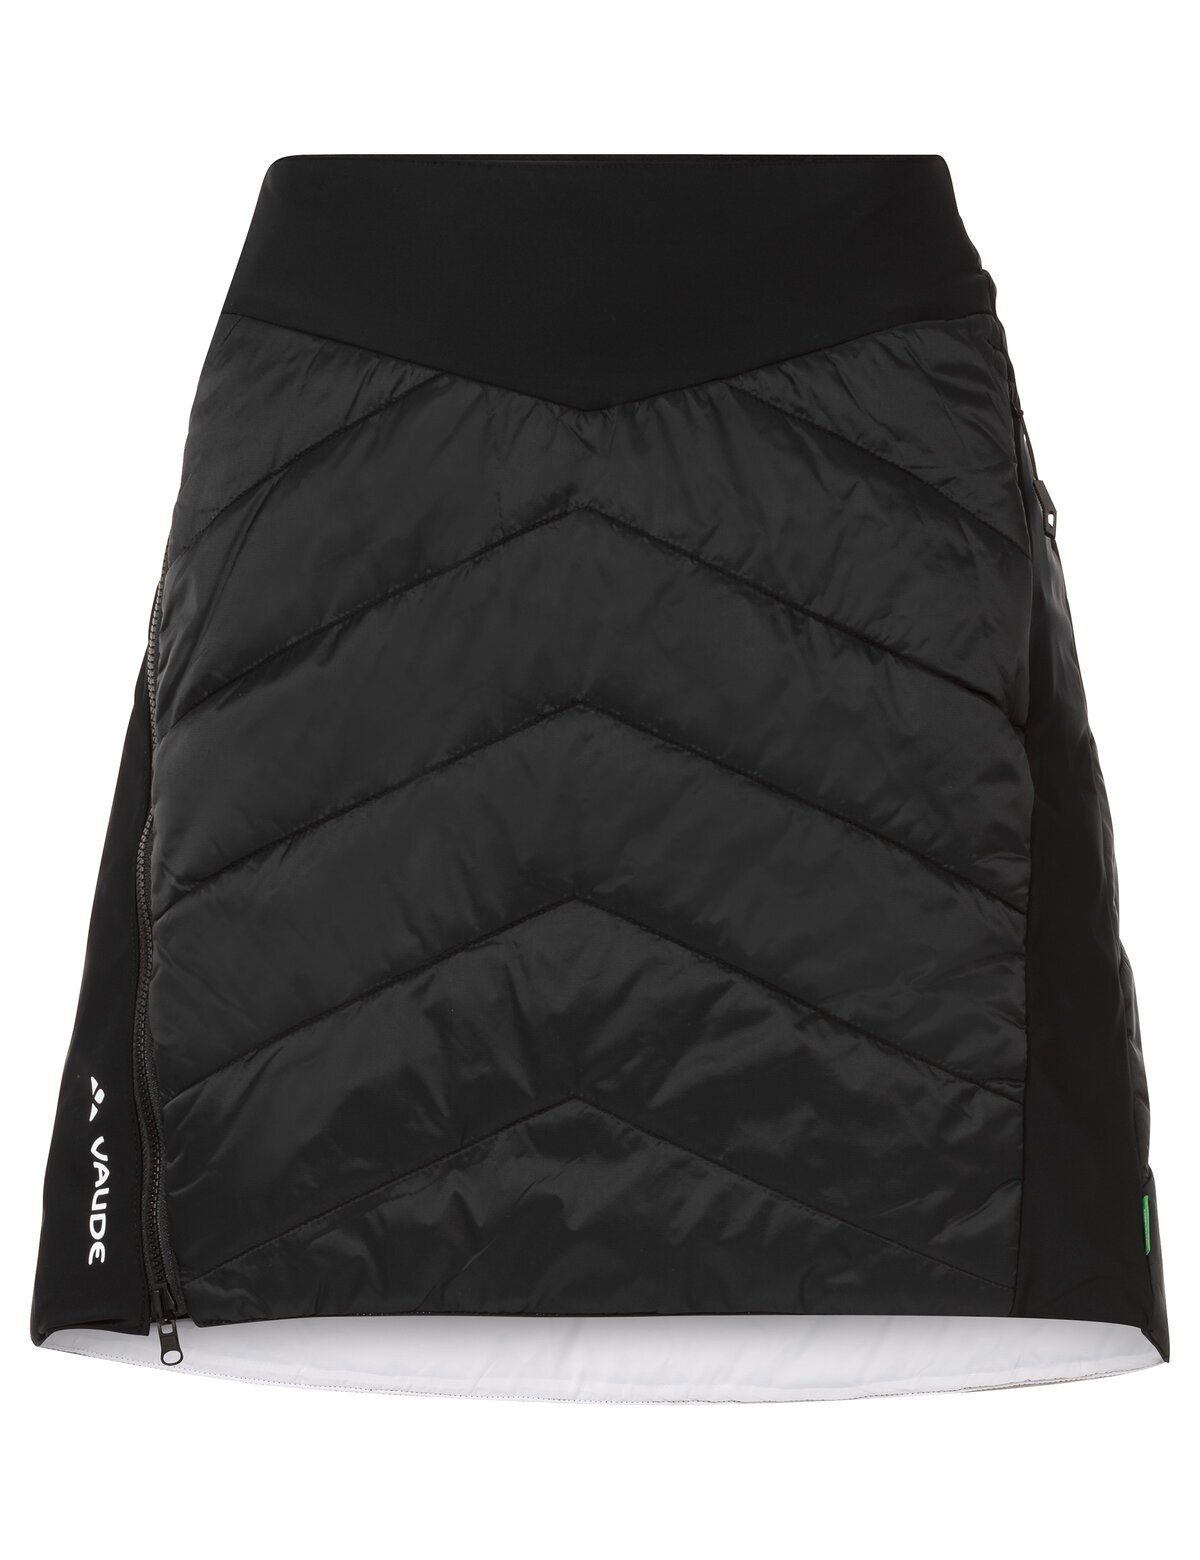 Preislimitierter Sonderverkauf VAUDE Wickelrock Women's Sesvenna Reversible II Unifarbe black/white in Skirt